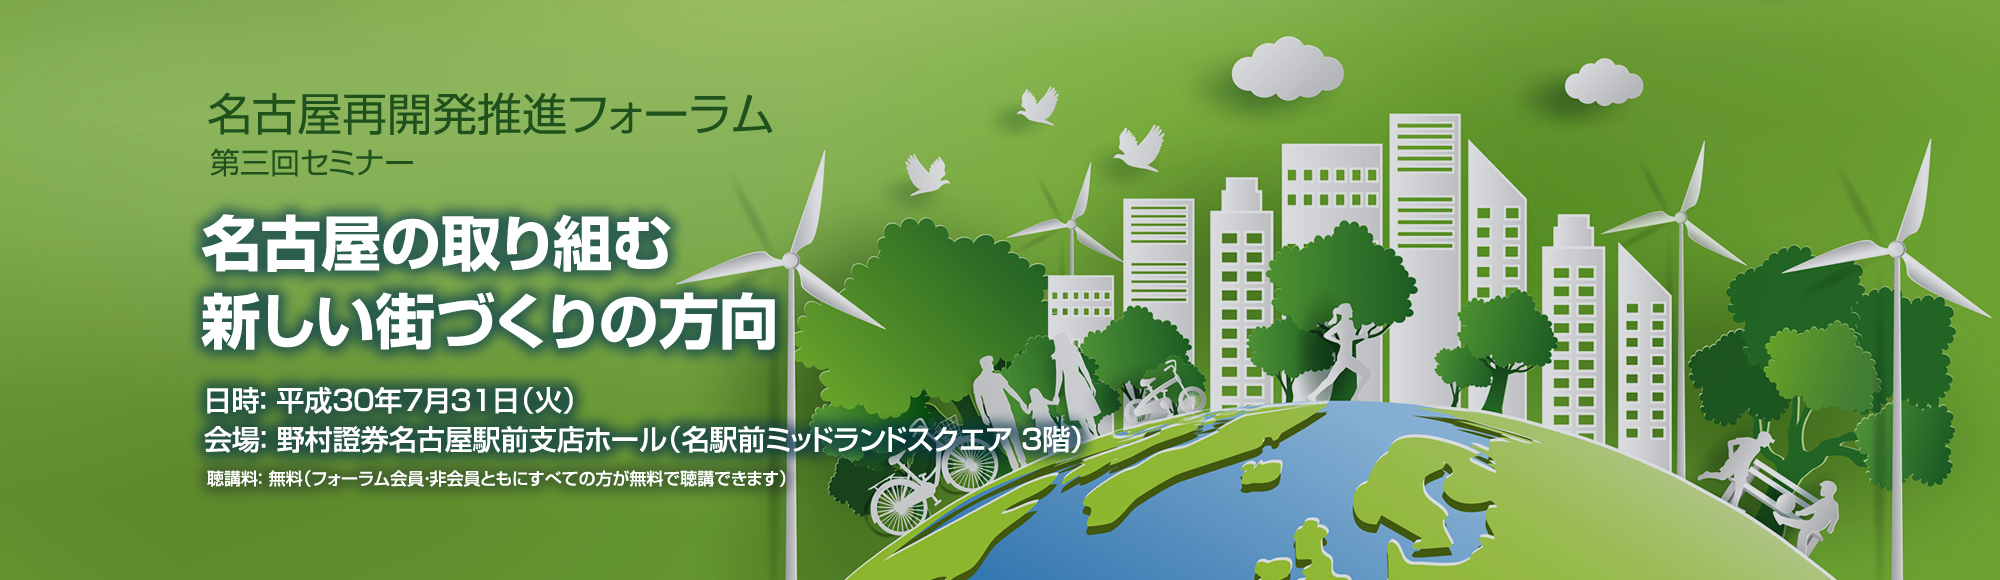 名古屋再開発推進フォーラム 第3回セミナー「名古屋の取り組む新しい街づくりの方向」